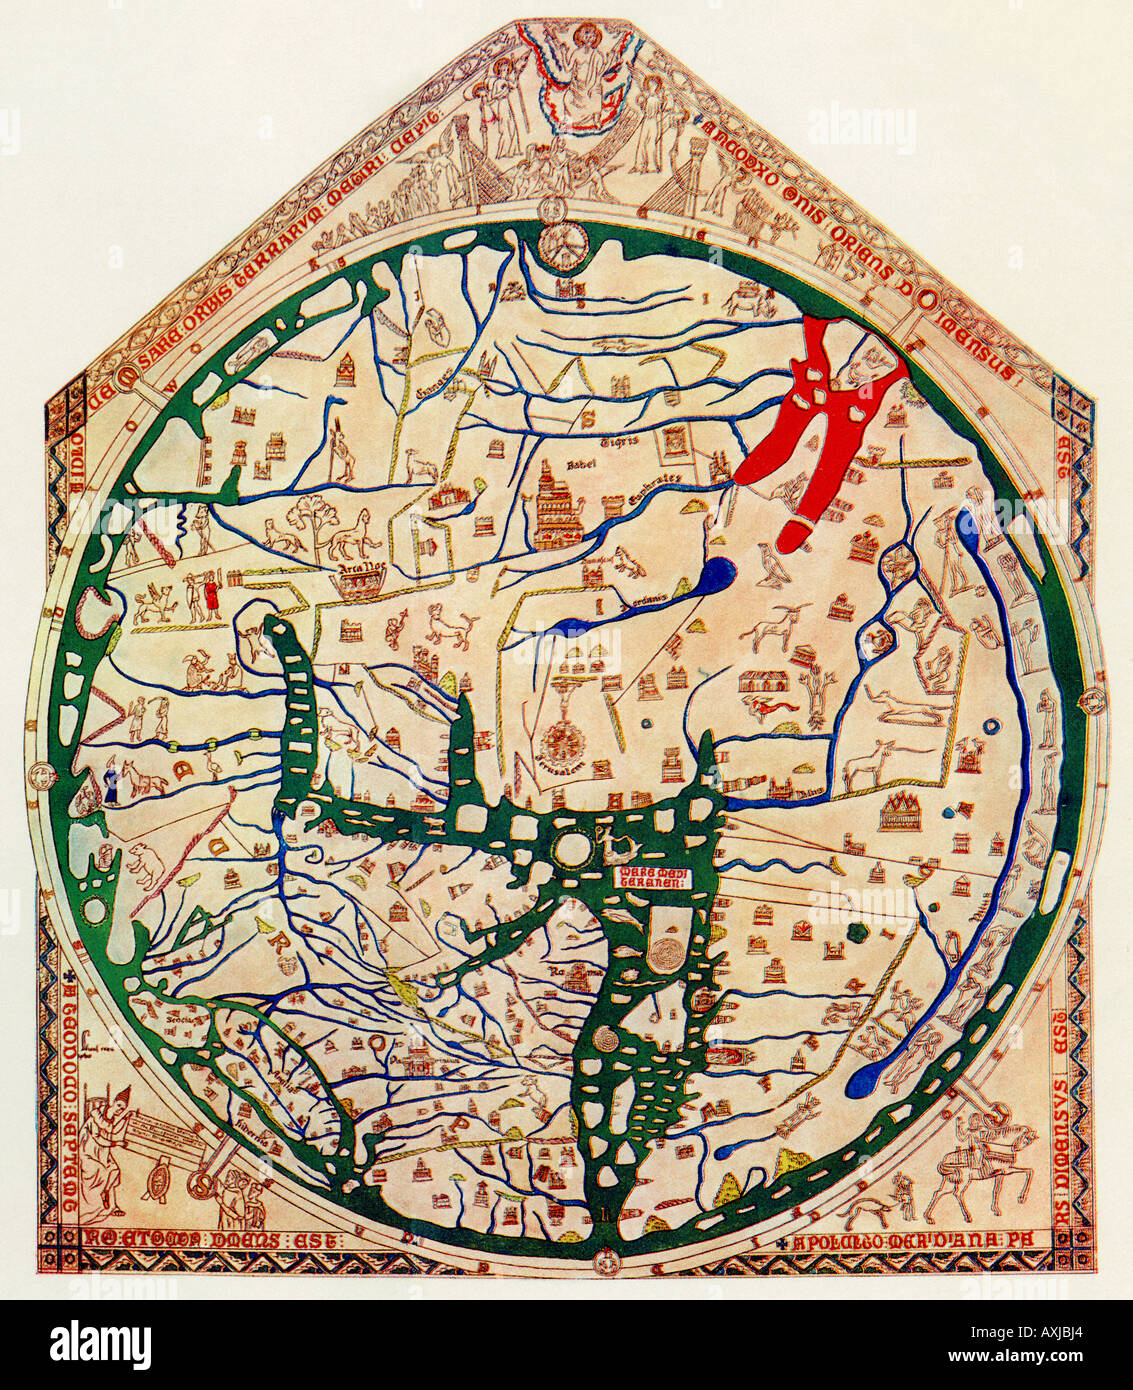 Hereford Mappa Mundi von 1280 Jerusalem zeigt in der Mitte Europas ist unten links Afrika ist unten rechts. Farbe Halbton Stockfoto